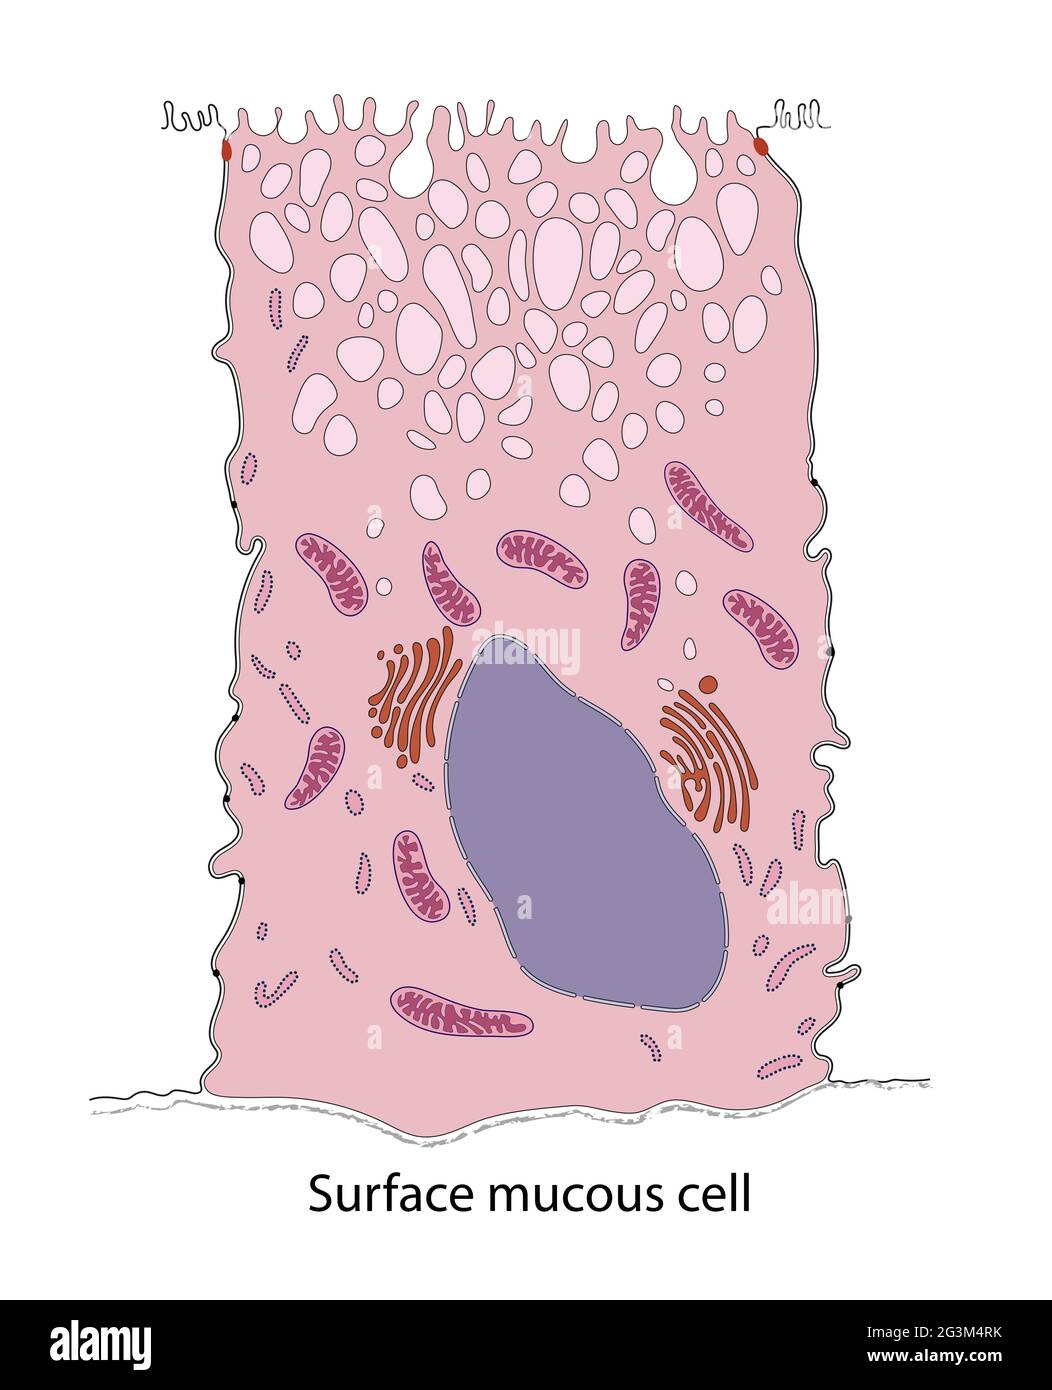 Diagrama de la superficie de las células mucosas del estómago del murciélago Foto de stock